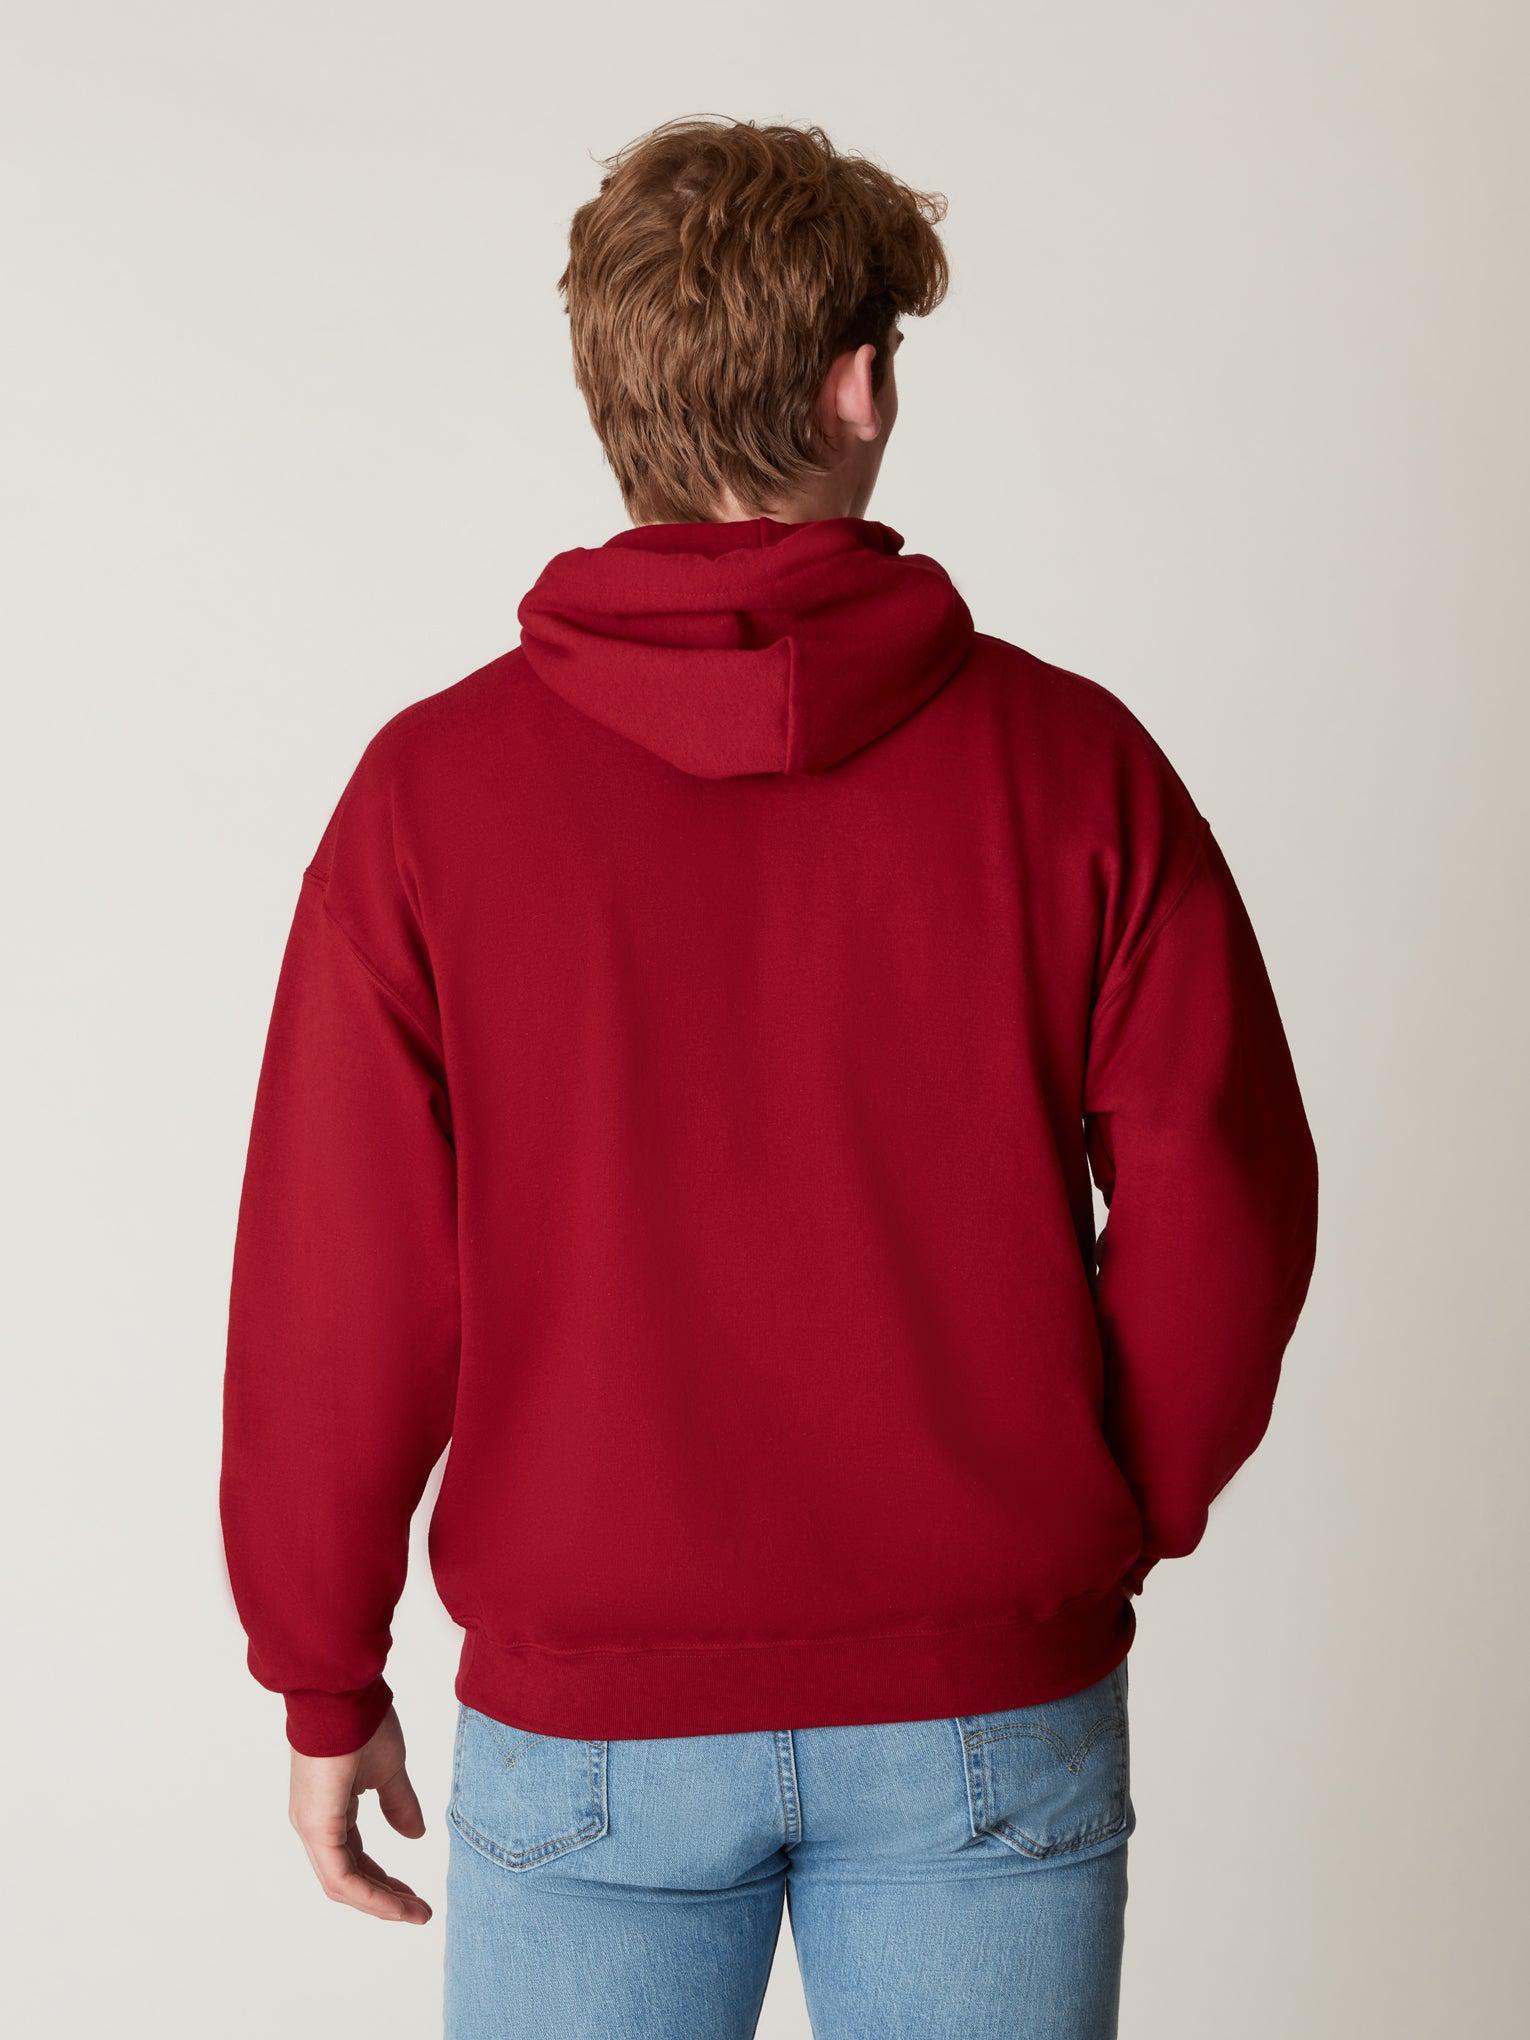 Harvard Hooded – Arc Harvard The Sweatshirt Shop